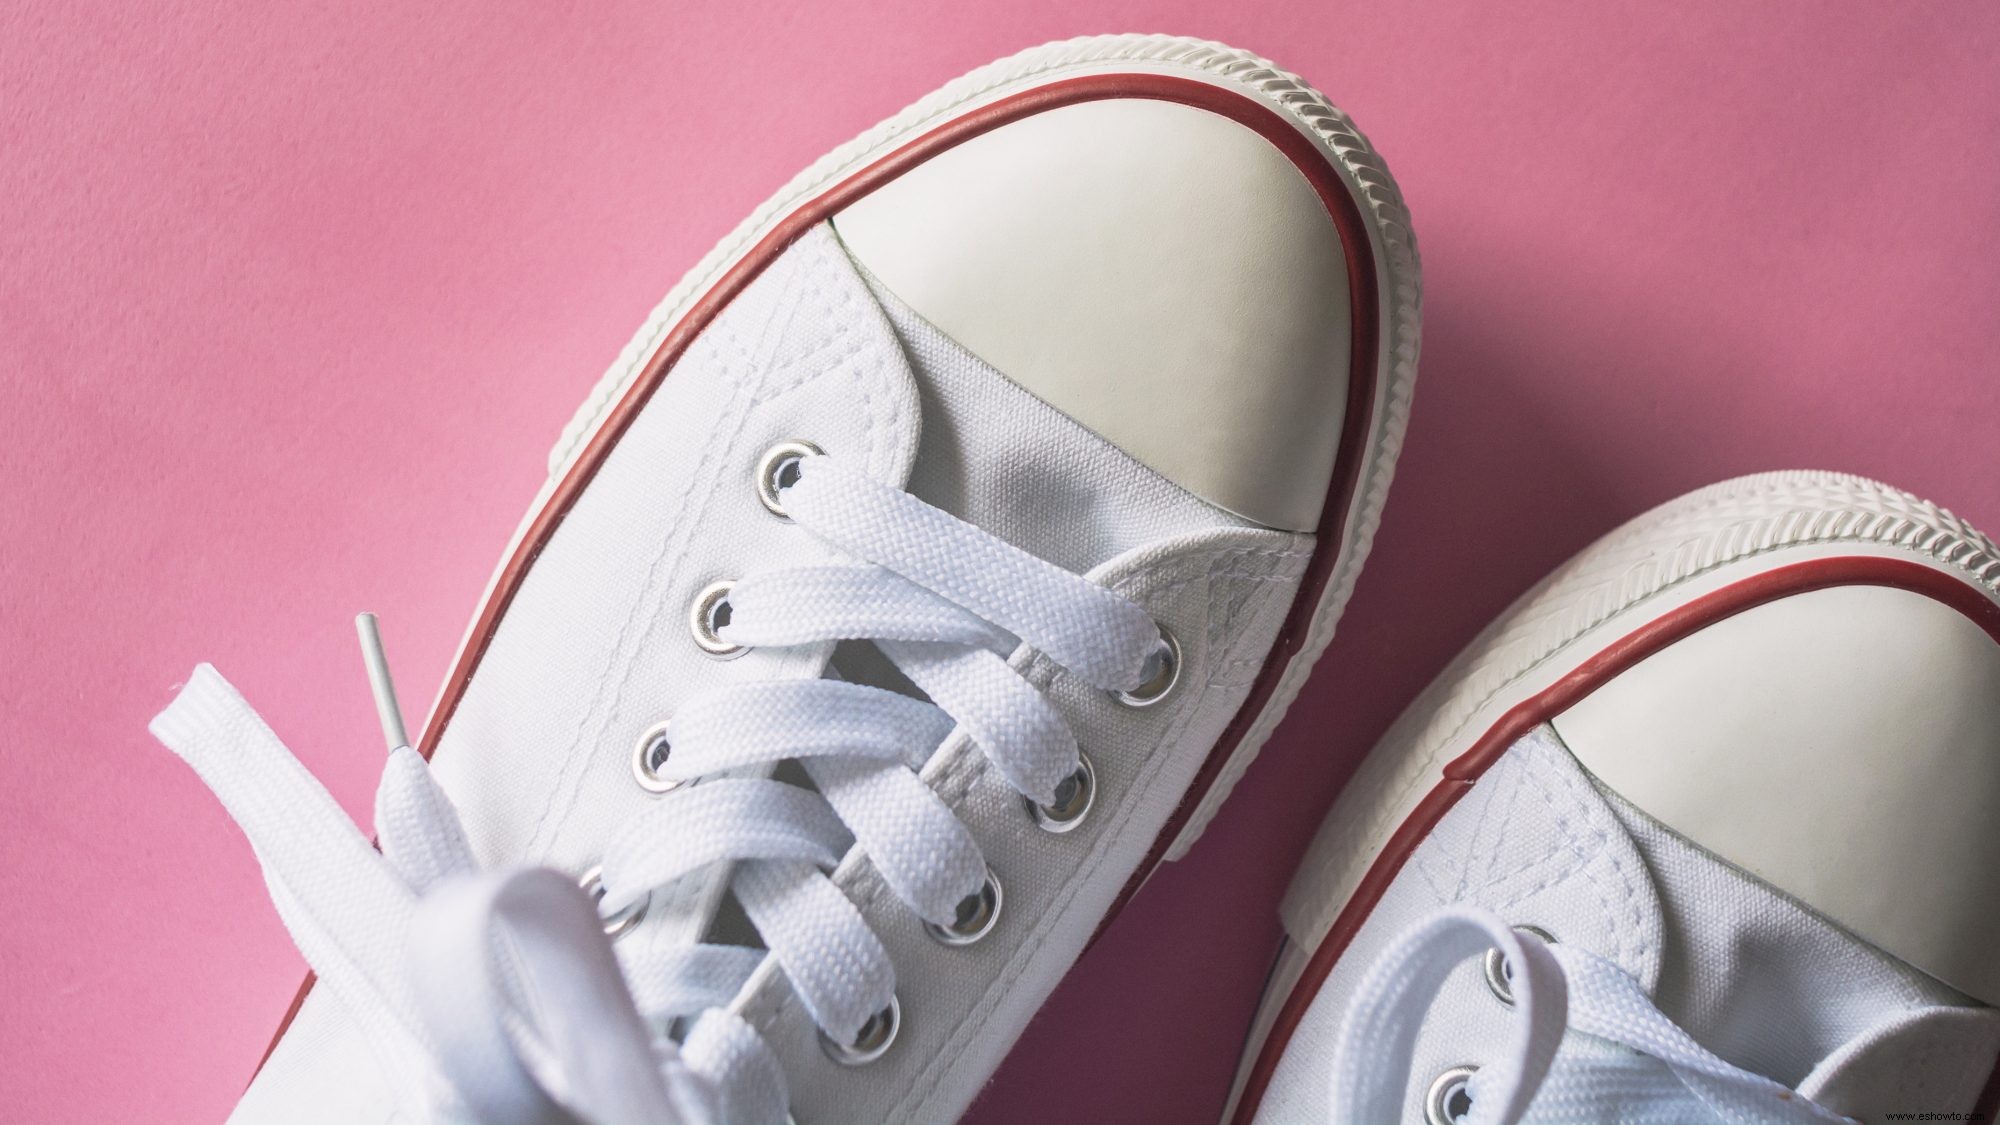 Cómo limpiar zapatos blancos en casa sin lejía ni limpiadores caros 